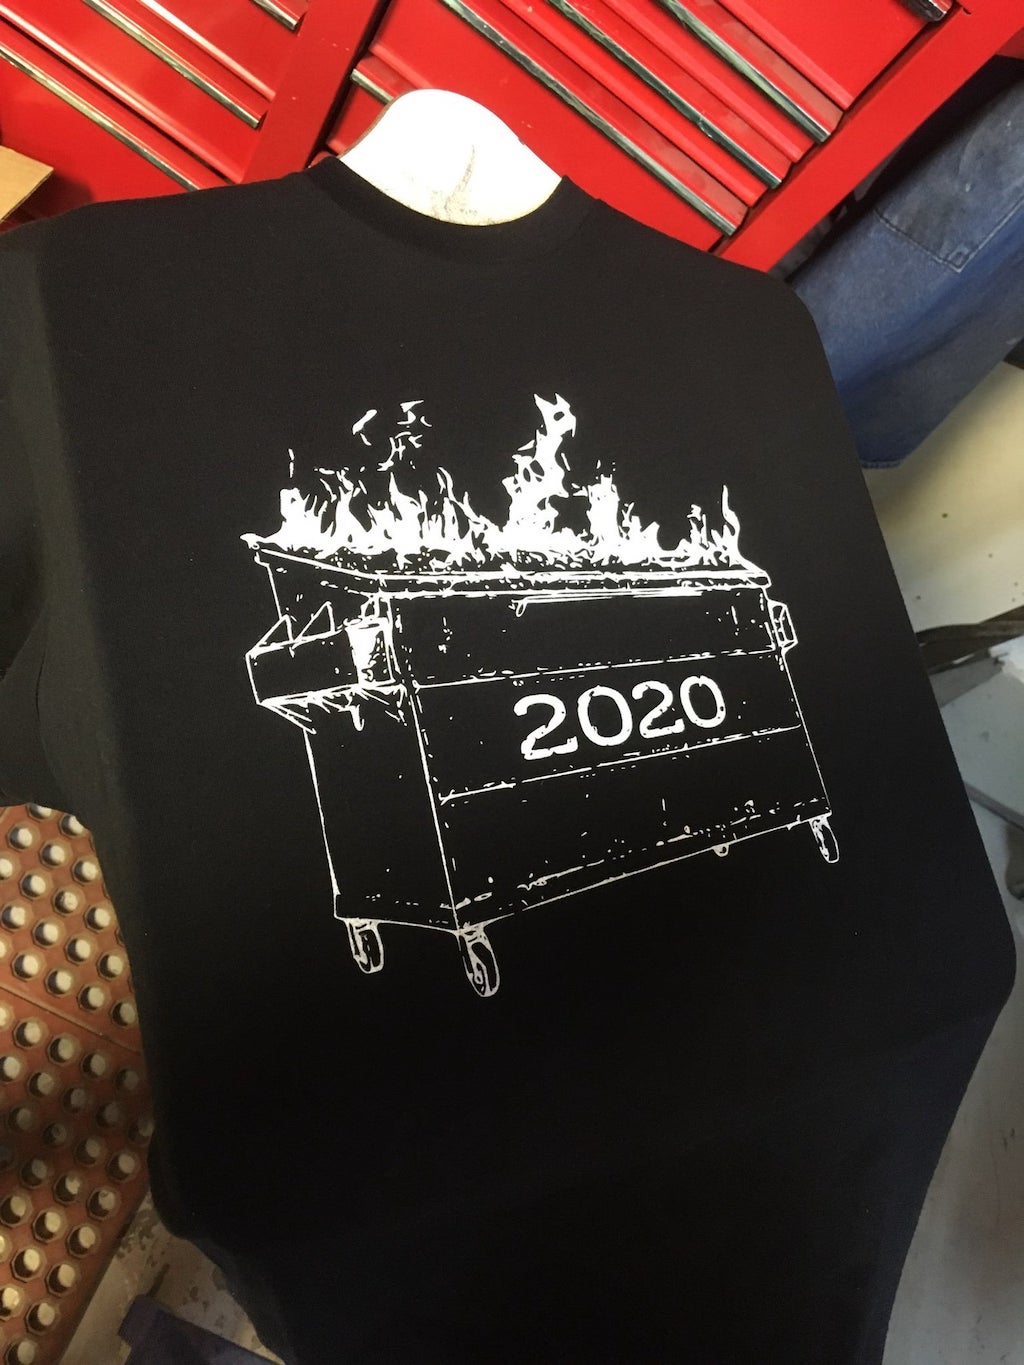 2020 Dumpster Fire TShirt